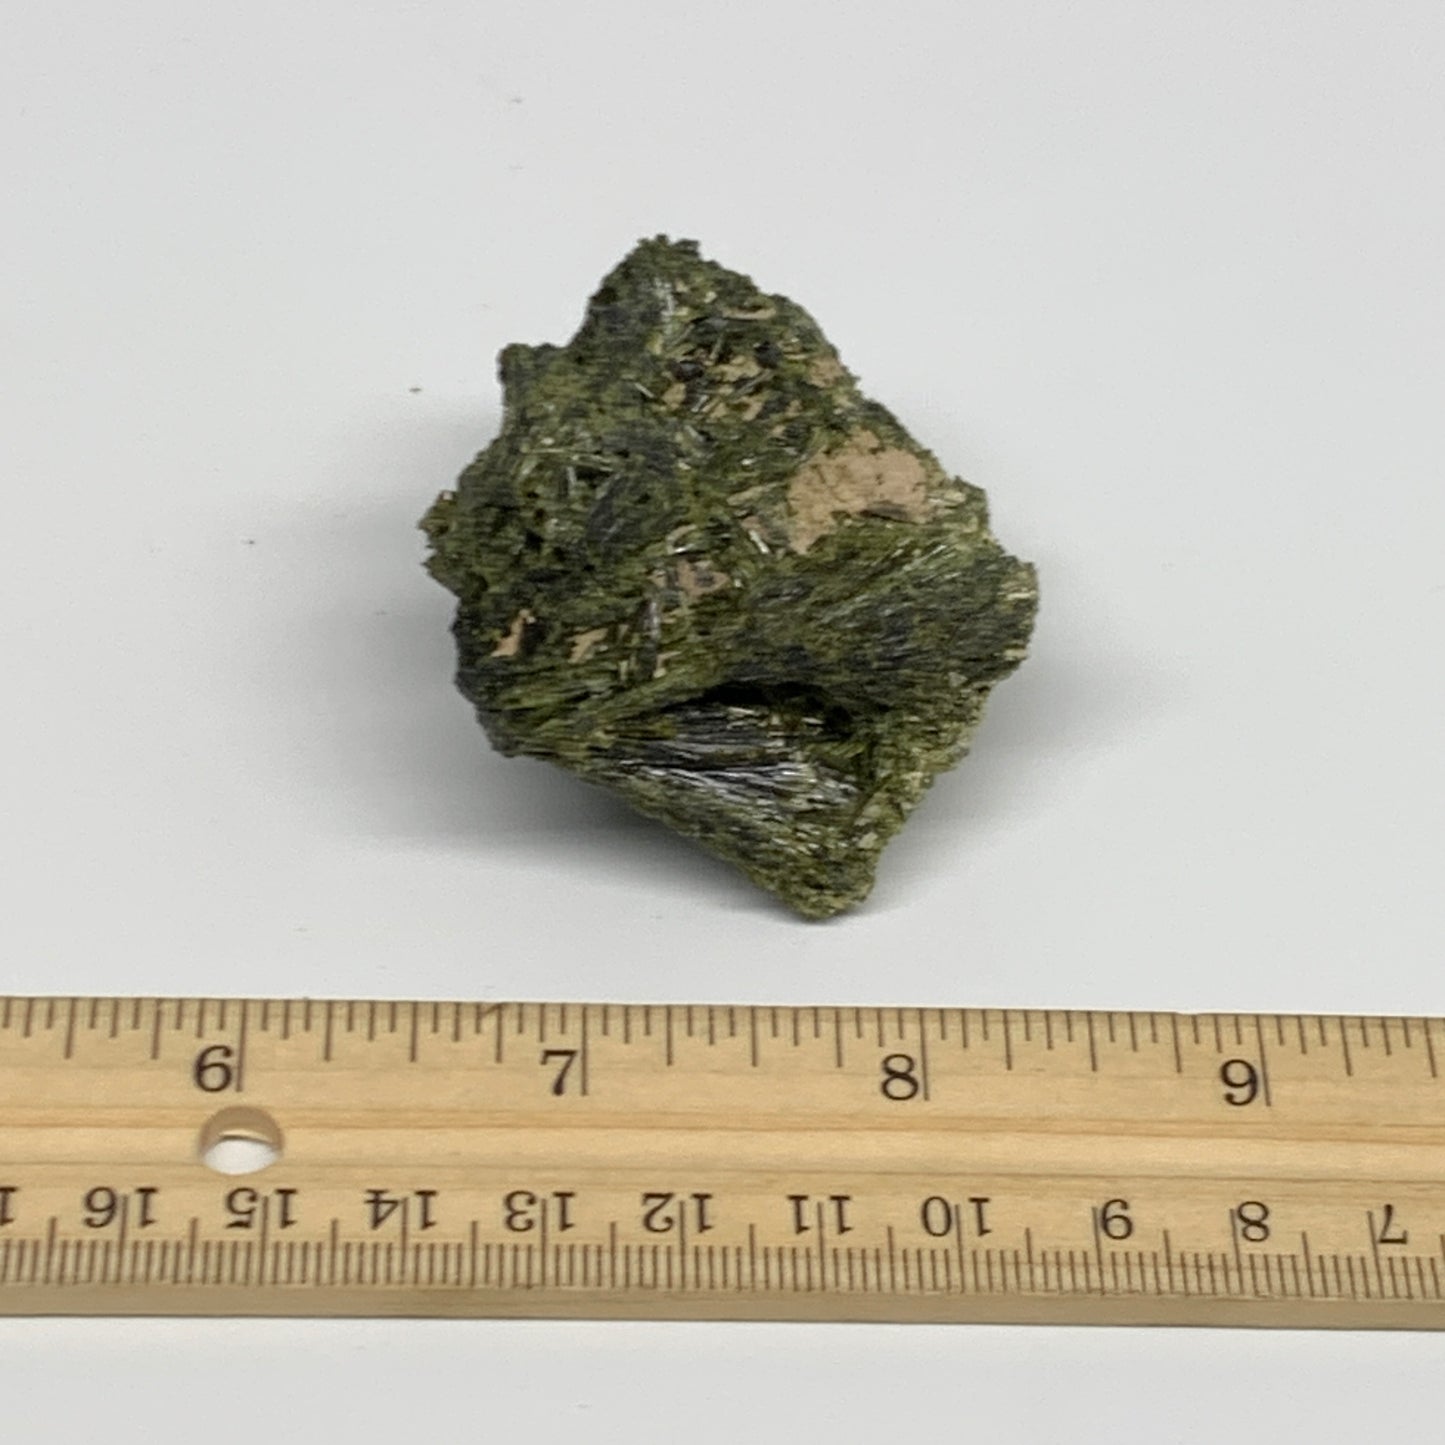 69.9g,2.1"x2.2"x1.1",Green Epidote Custer/Leaf Mineral Specimen @Pakistan,B27611